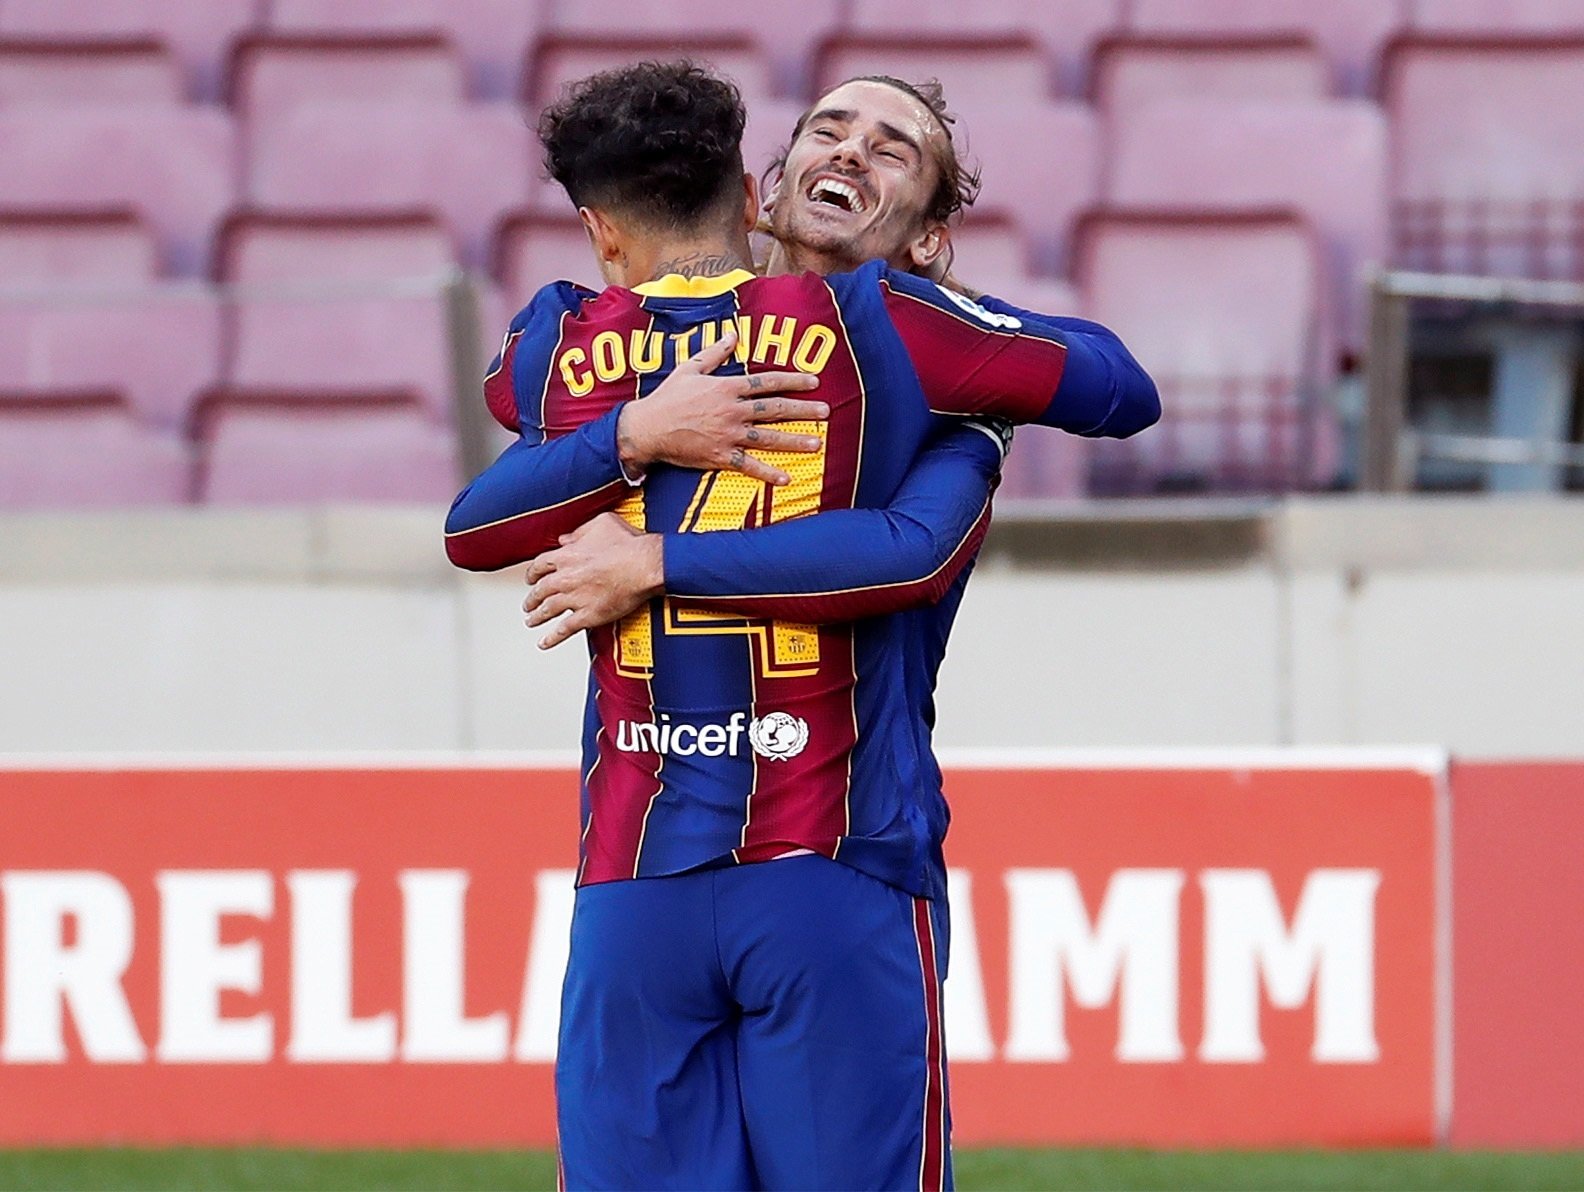 Els xiulets i Messi marquen la presentació dels jugadors del Barça al Gamper